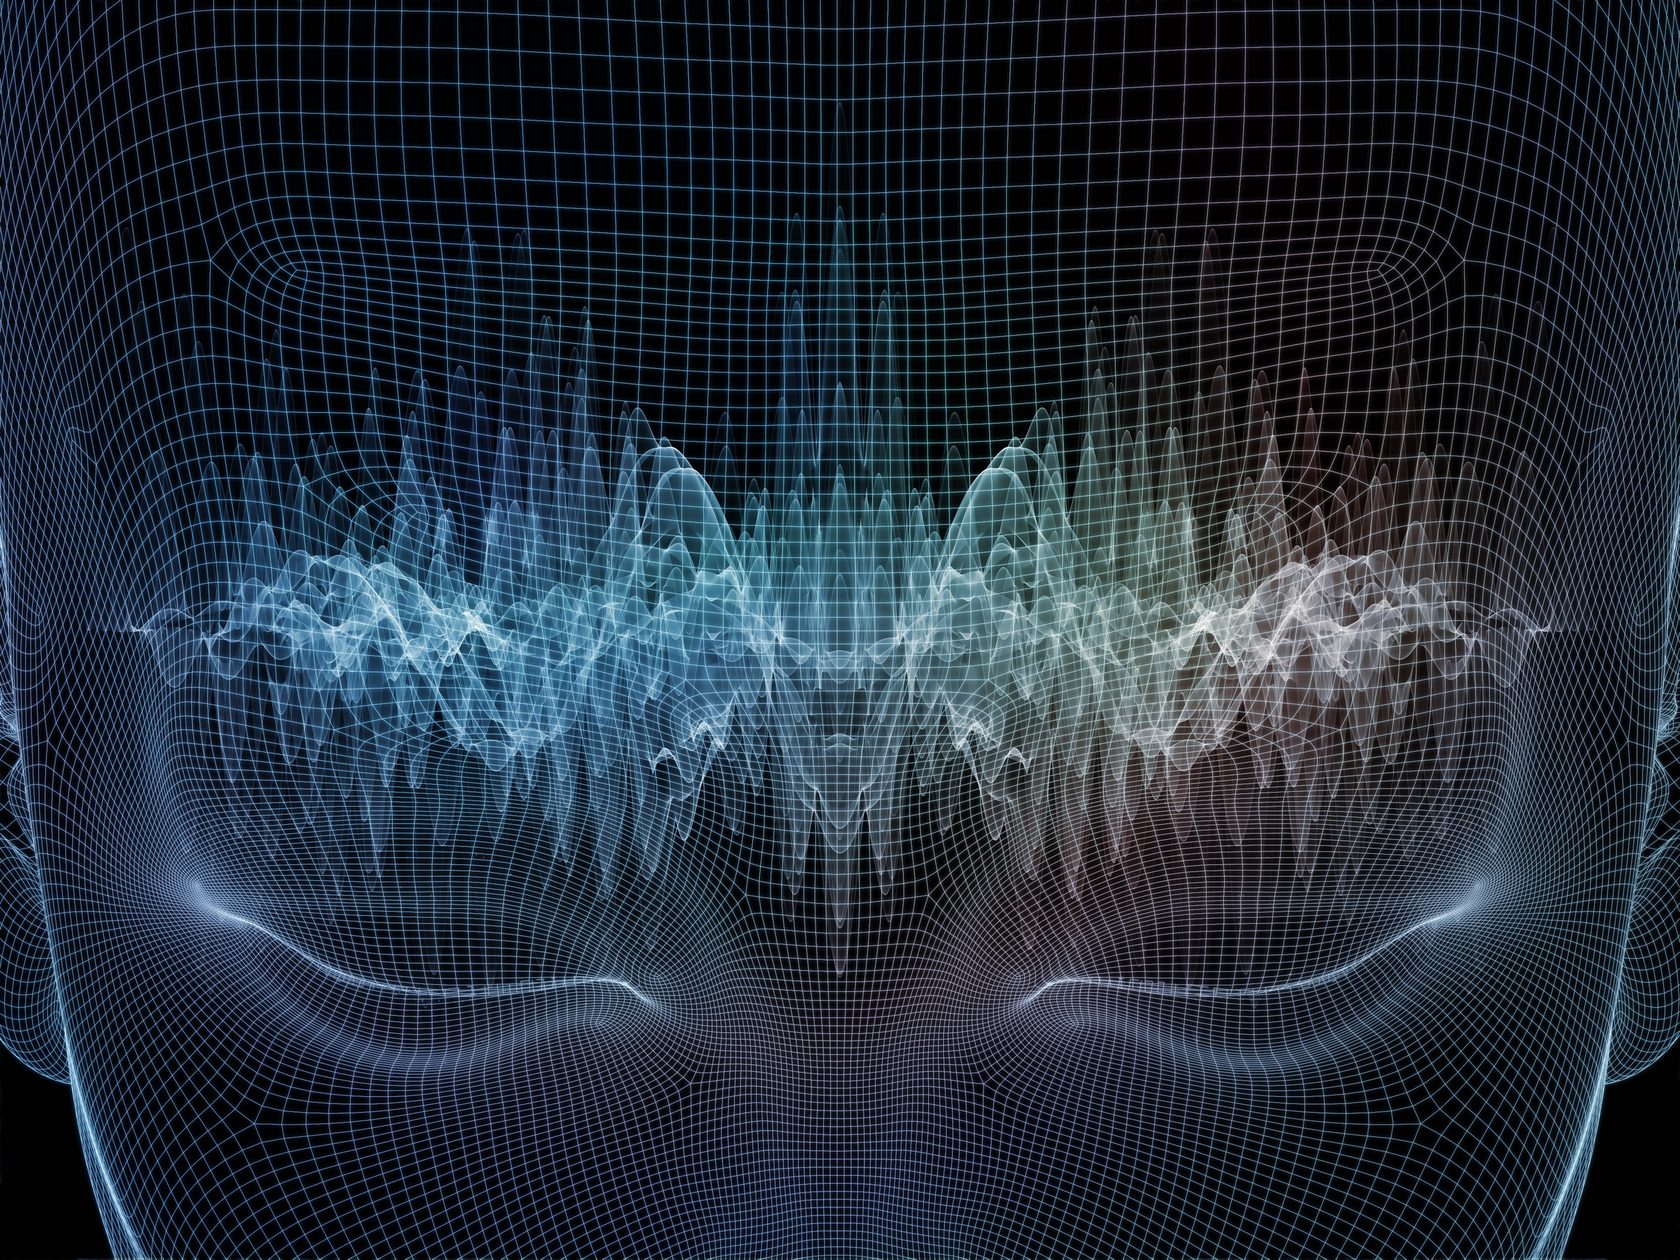 Brainwave. Brainwave кит. Brainwave interface. Ритмы мозга. Стимулирование акустическими волнами.